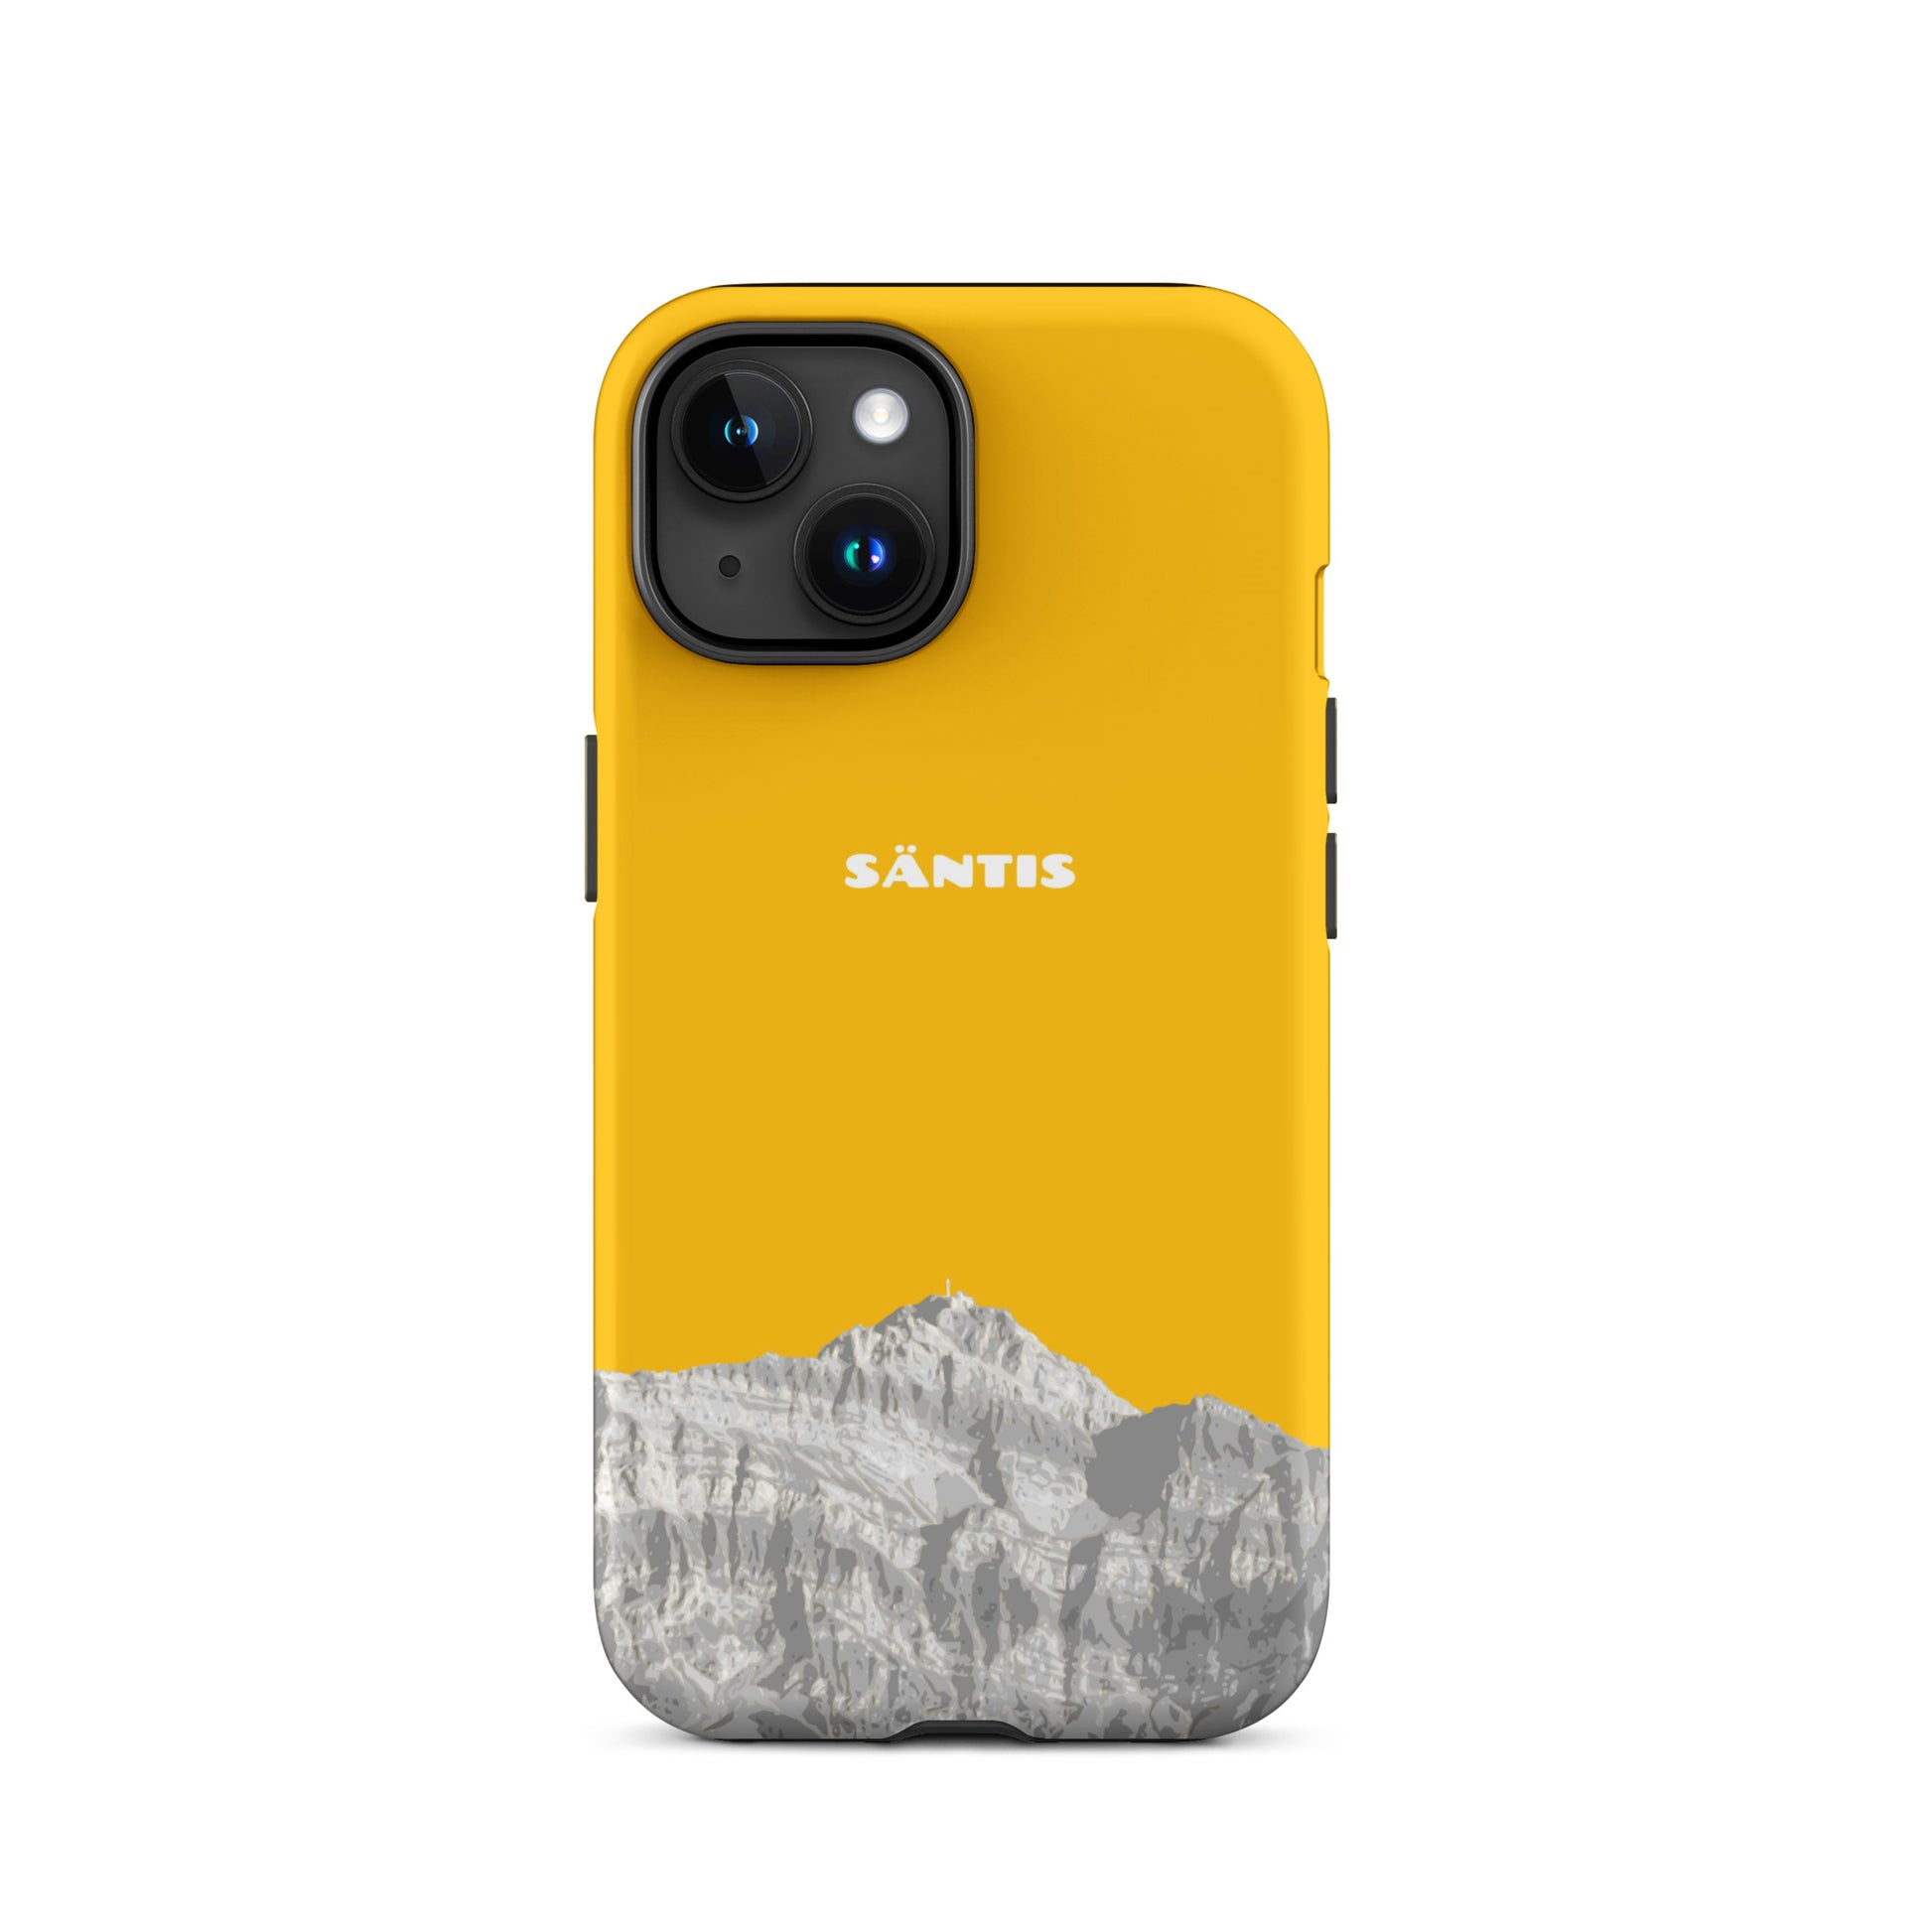 Hülle für das iPhone 15 von Apple in der Farbe Goldgelb, dass den Säntis im Alpstein zeigt.